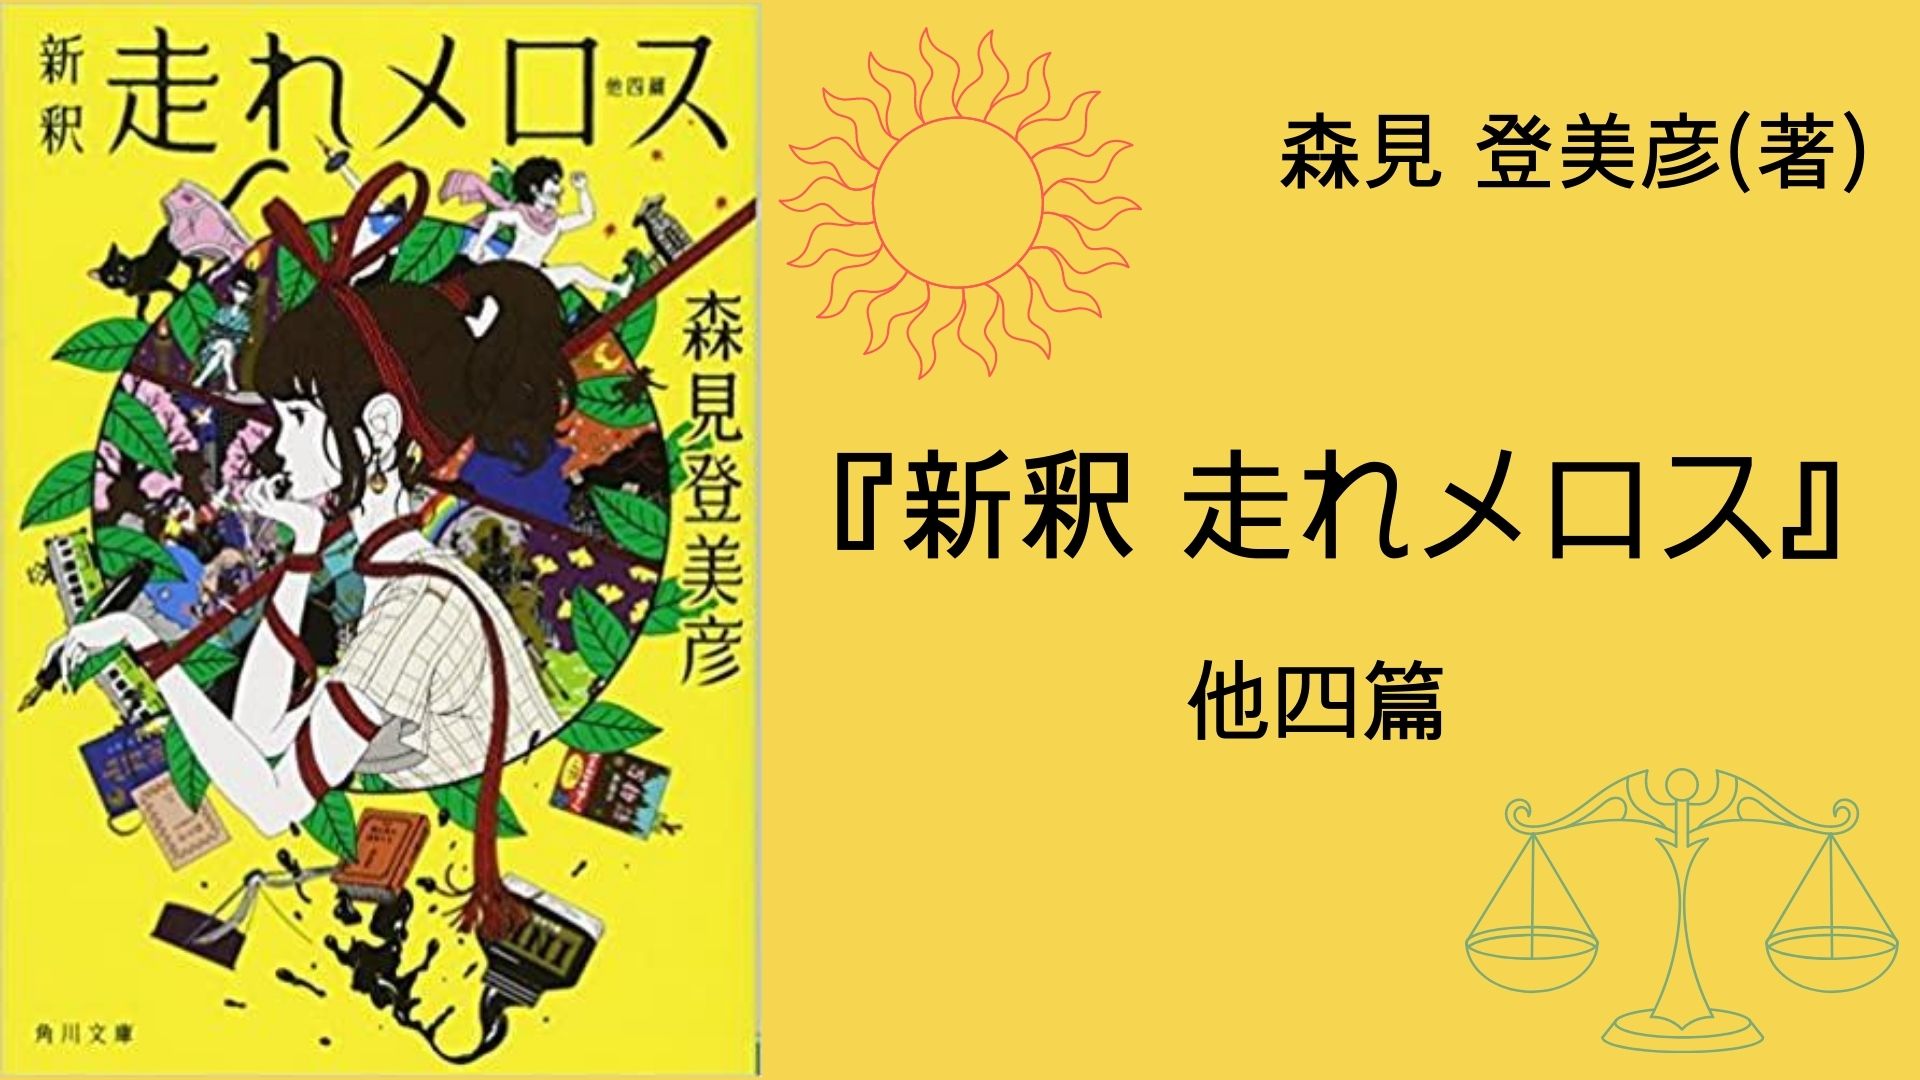 No.107】〜近代日本文学作品が、現代京都を舞台に生まれ変わる 